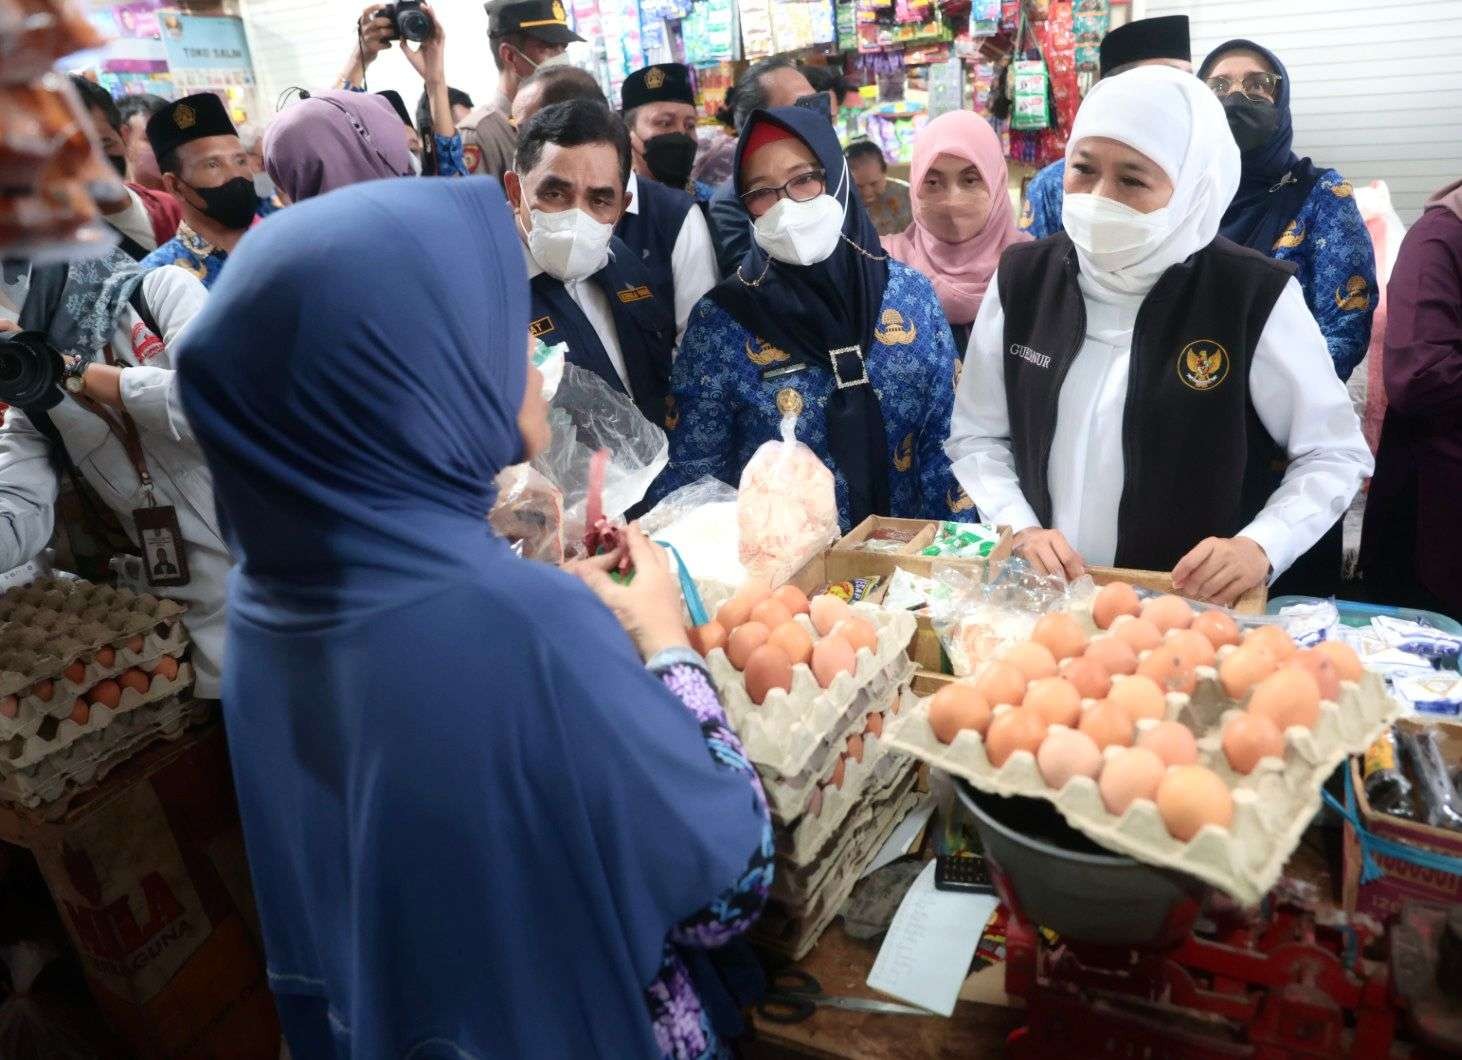 Gubernur Jatim, Khofifah Indar Parawansa lakukan upaya tekan inflasi, dengan blusukan di Pasar Baru, Gresik, Senin 17 Oktober 2022. (Foto: Humas Pemprov Jatim)